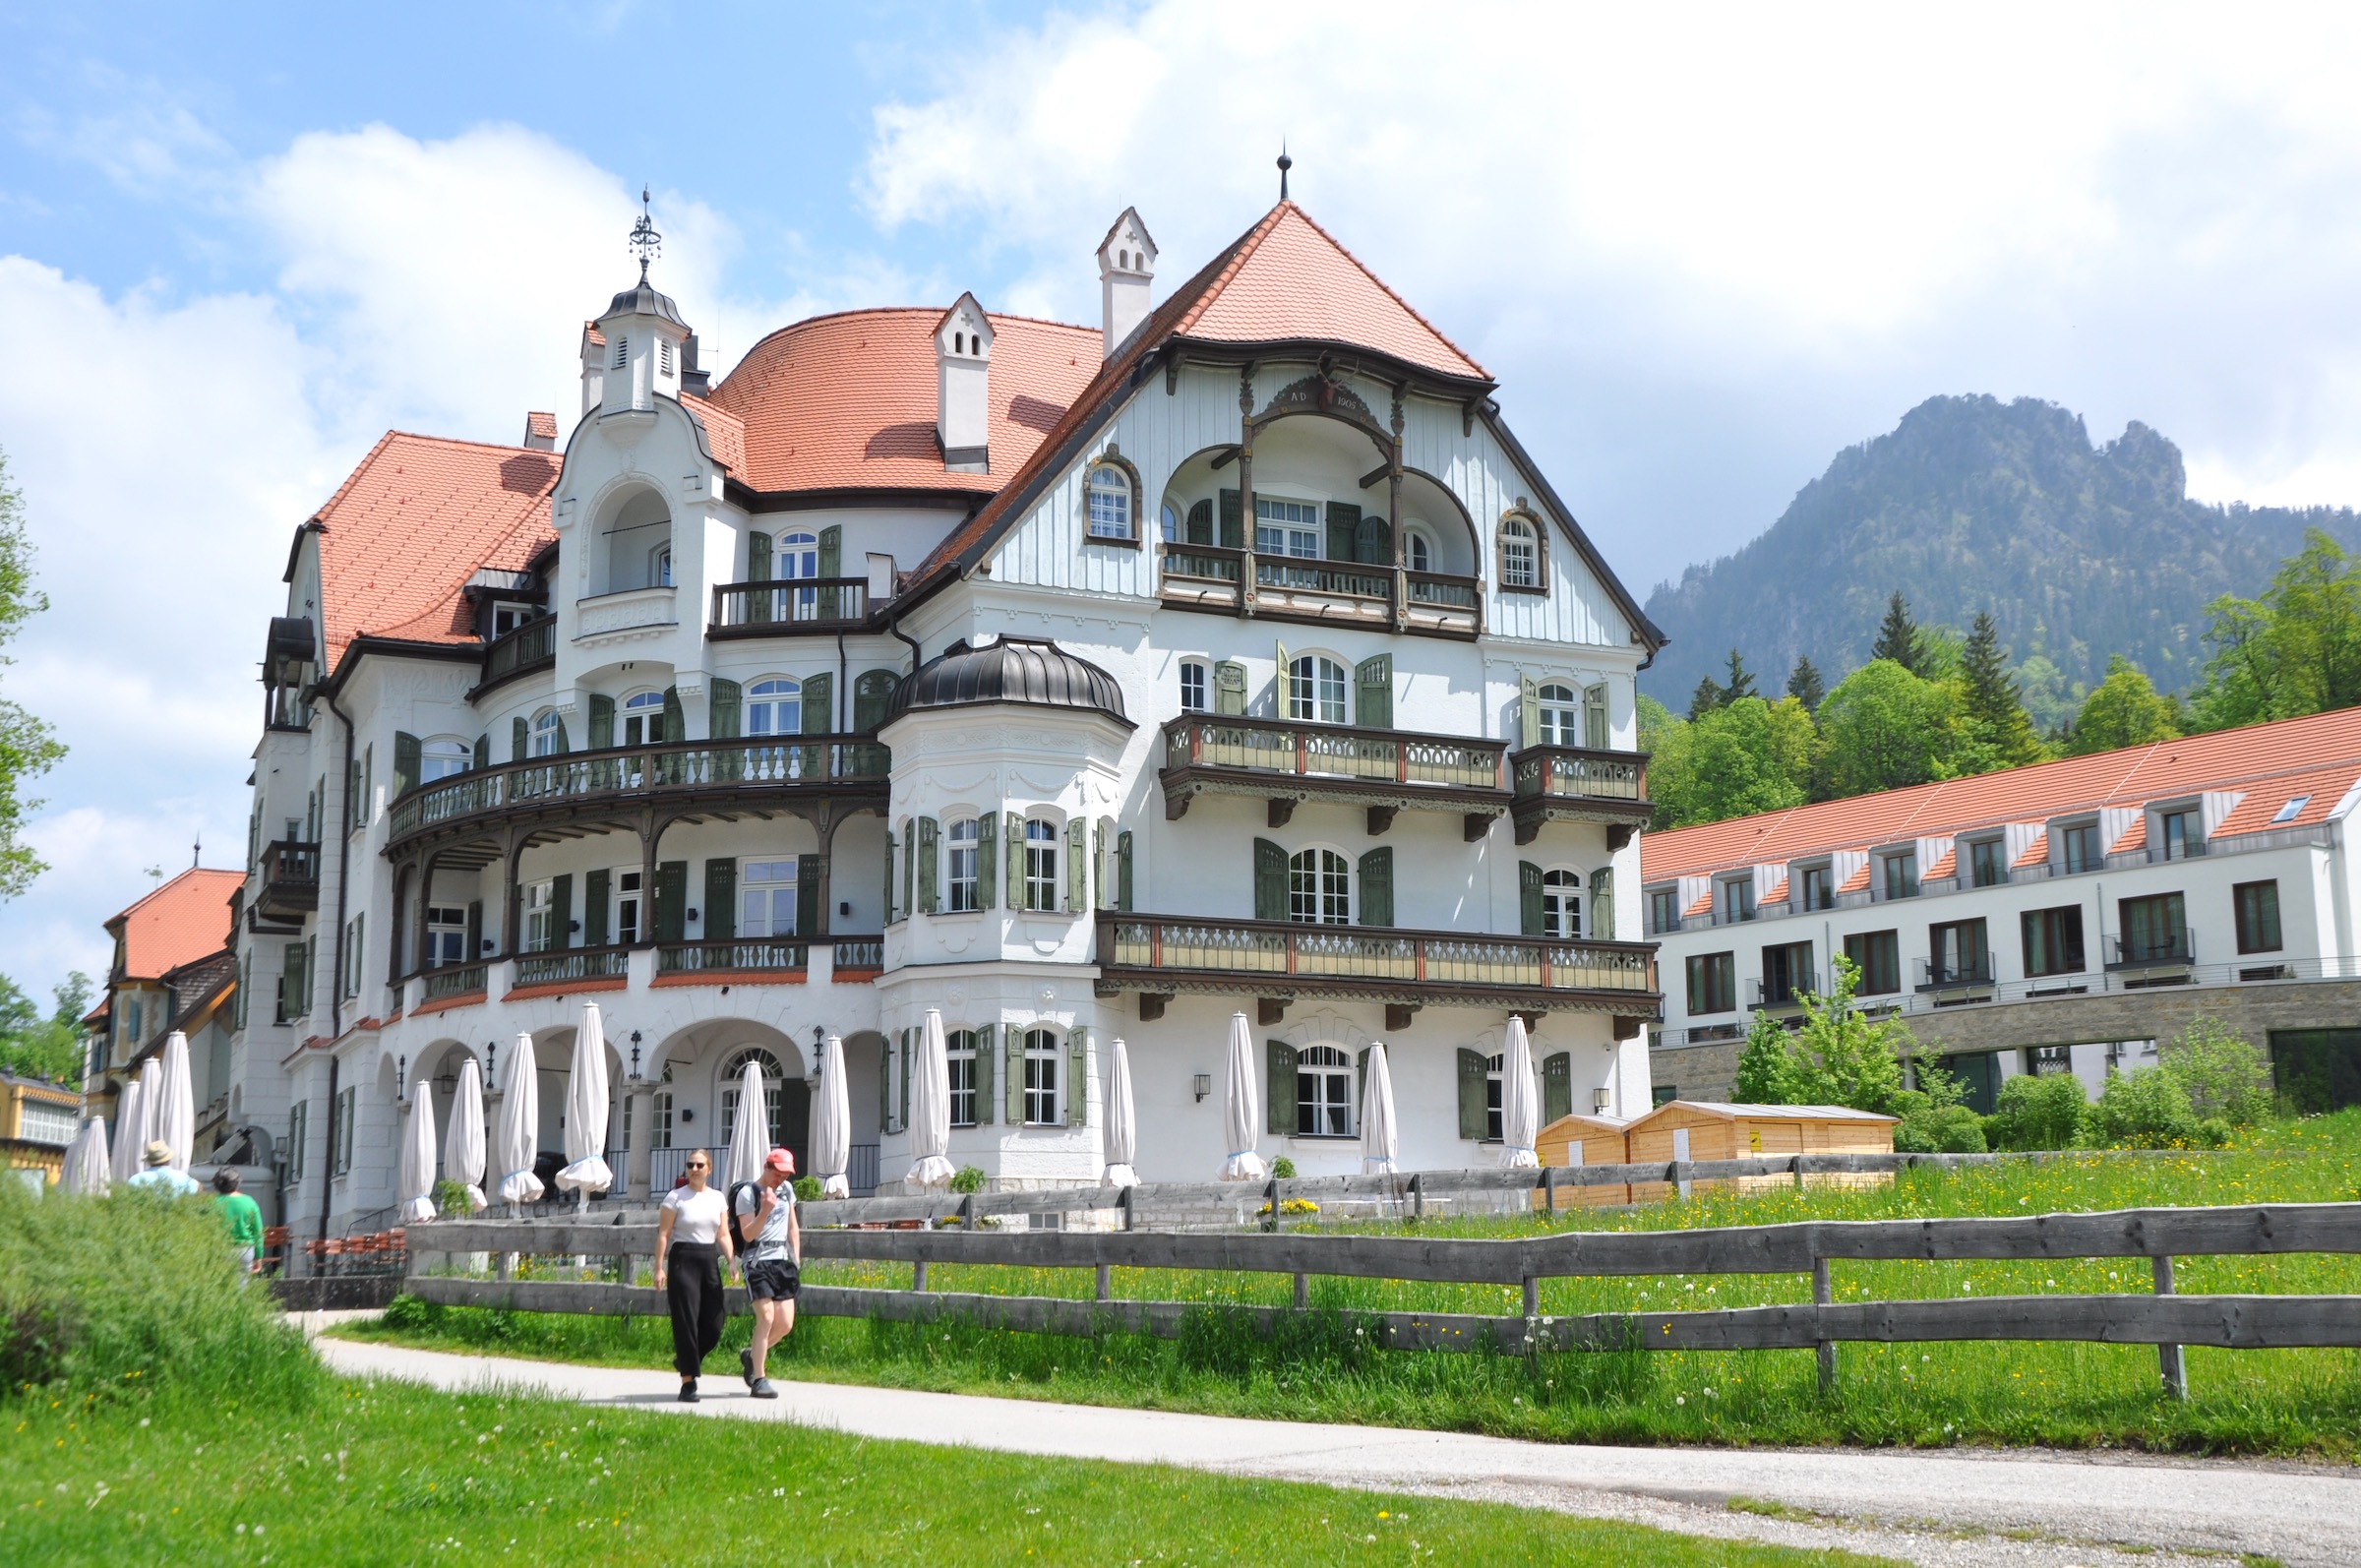 Castelo Neuschwanstein